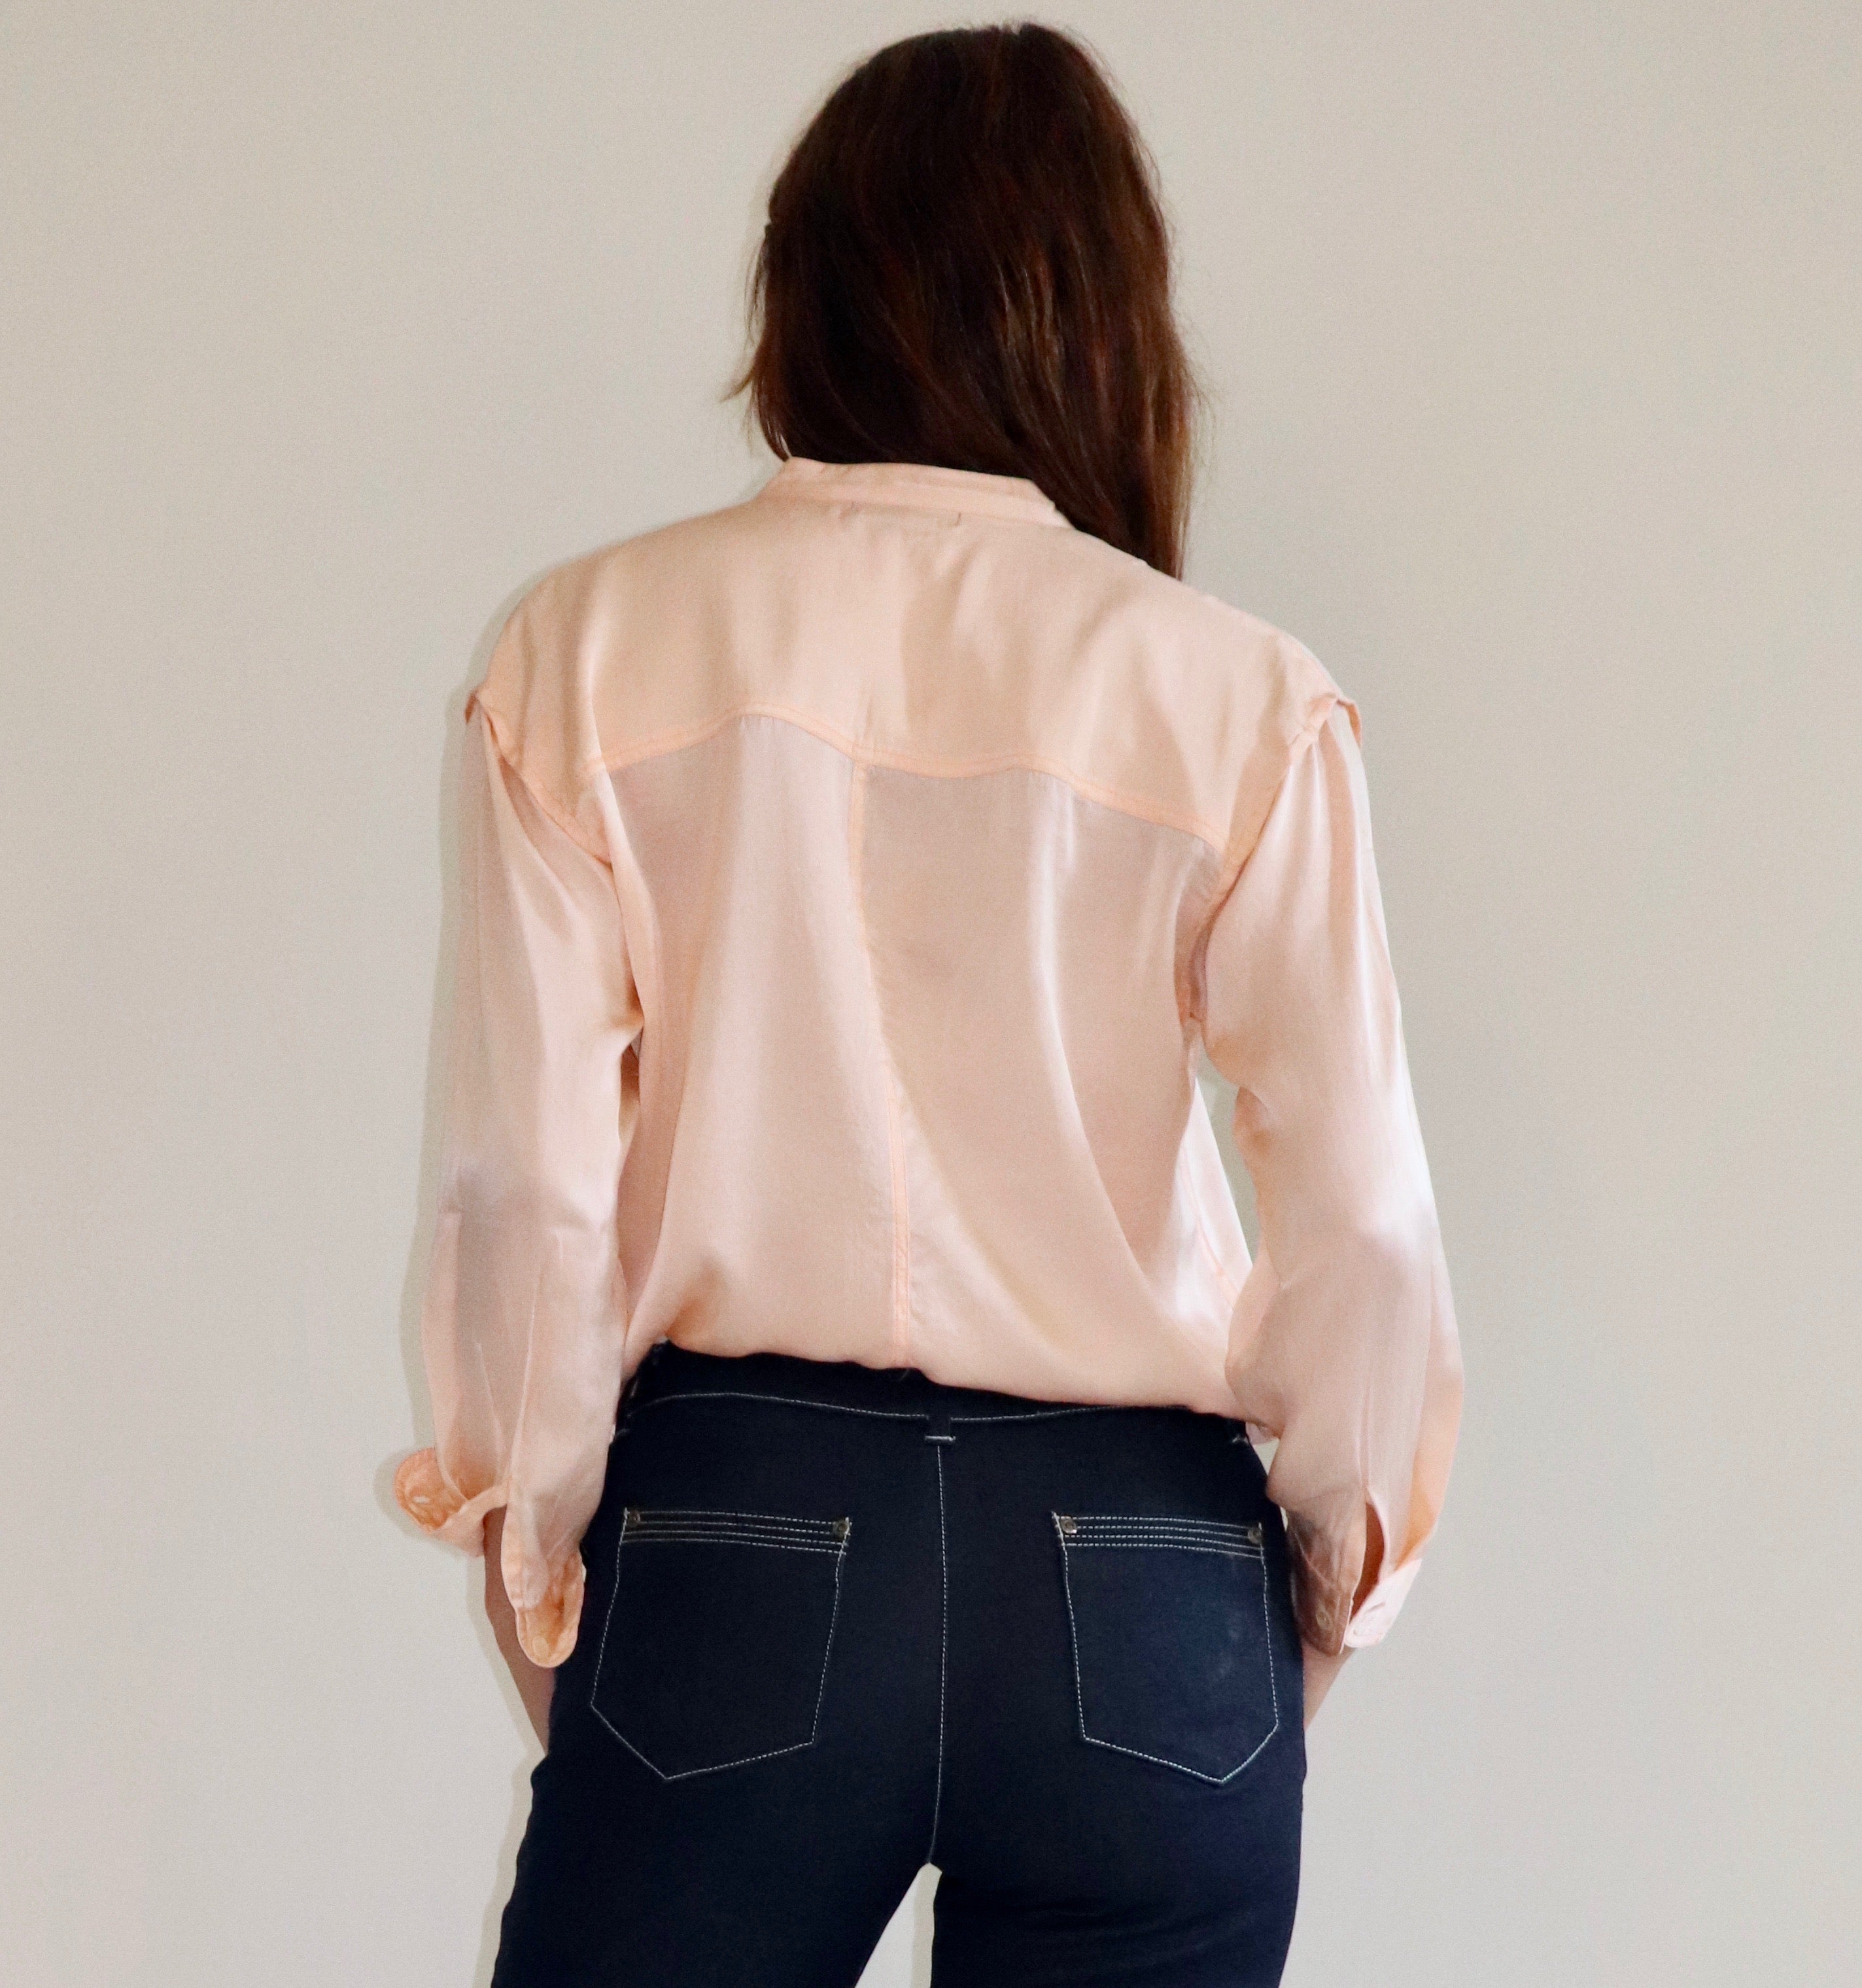 Fallon Shirt, Peach silk